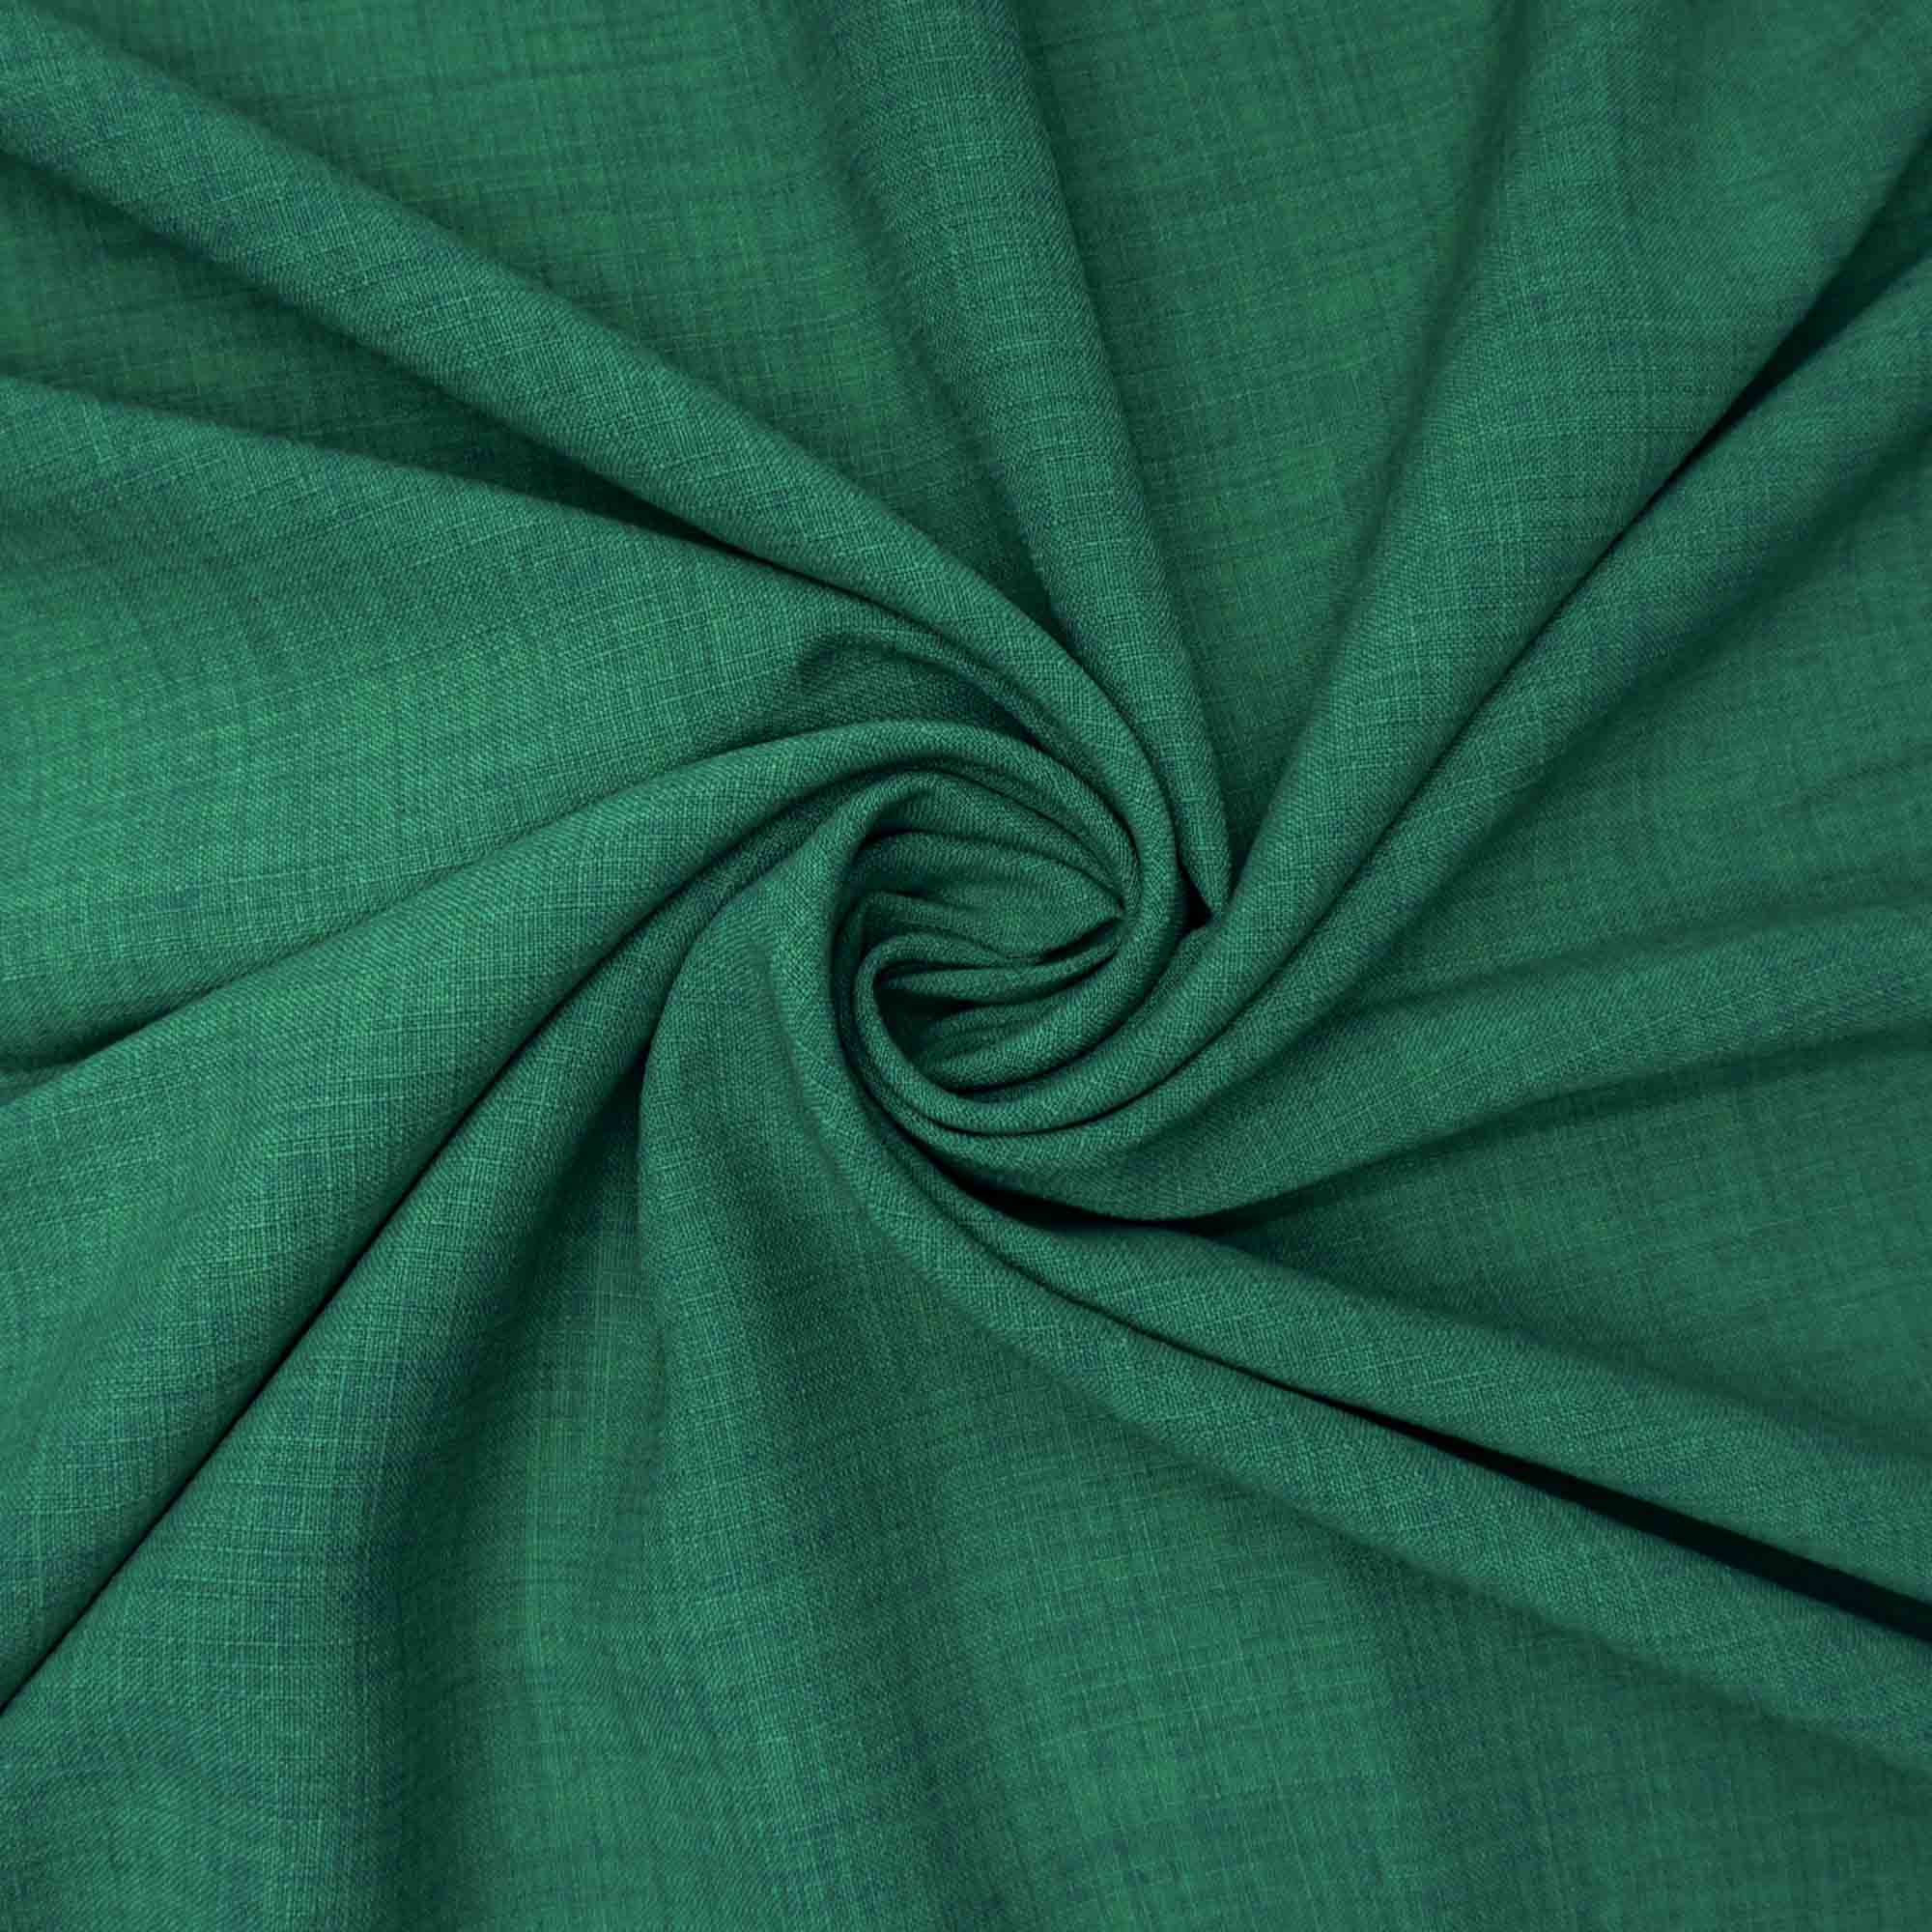 Tecido poliester com textura de linho verde